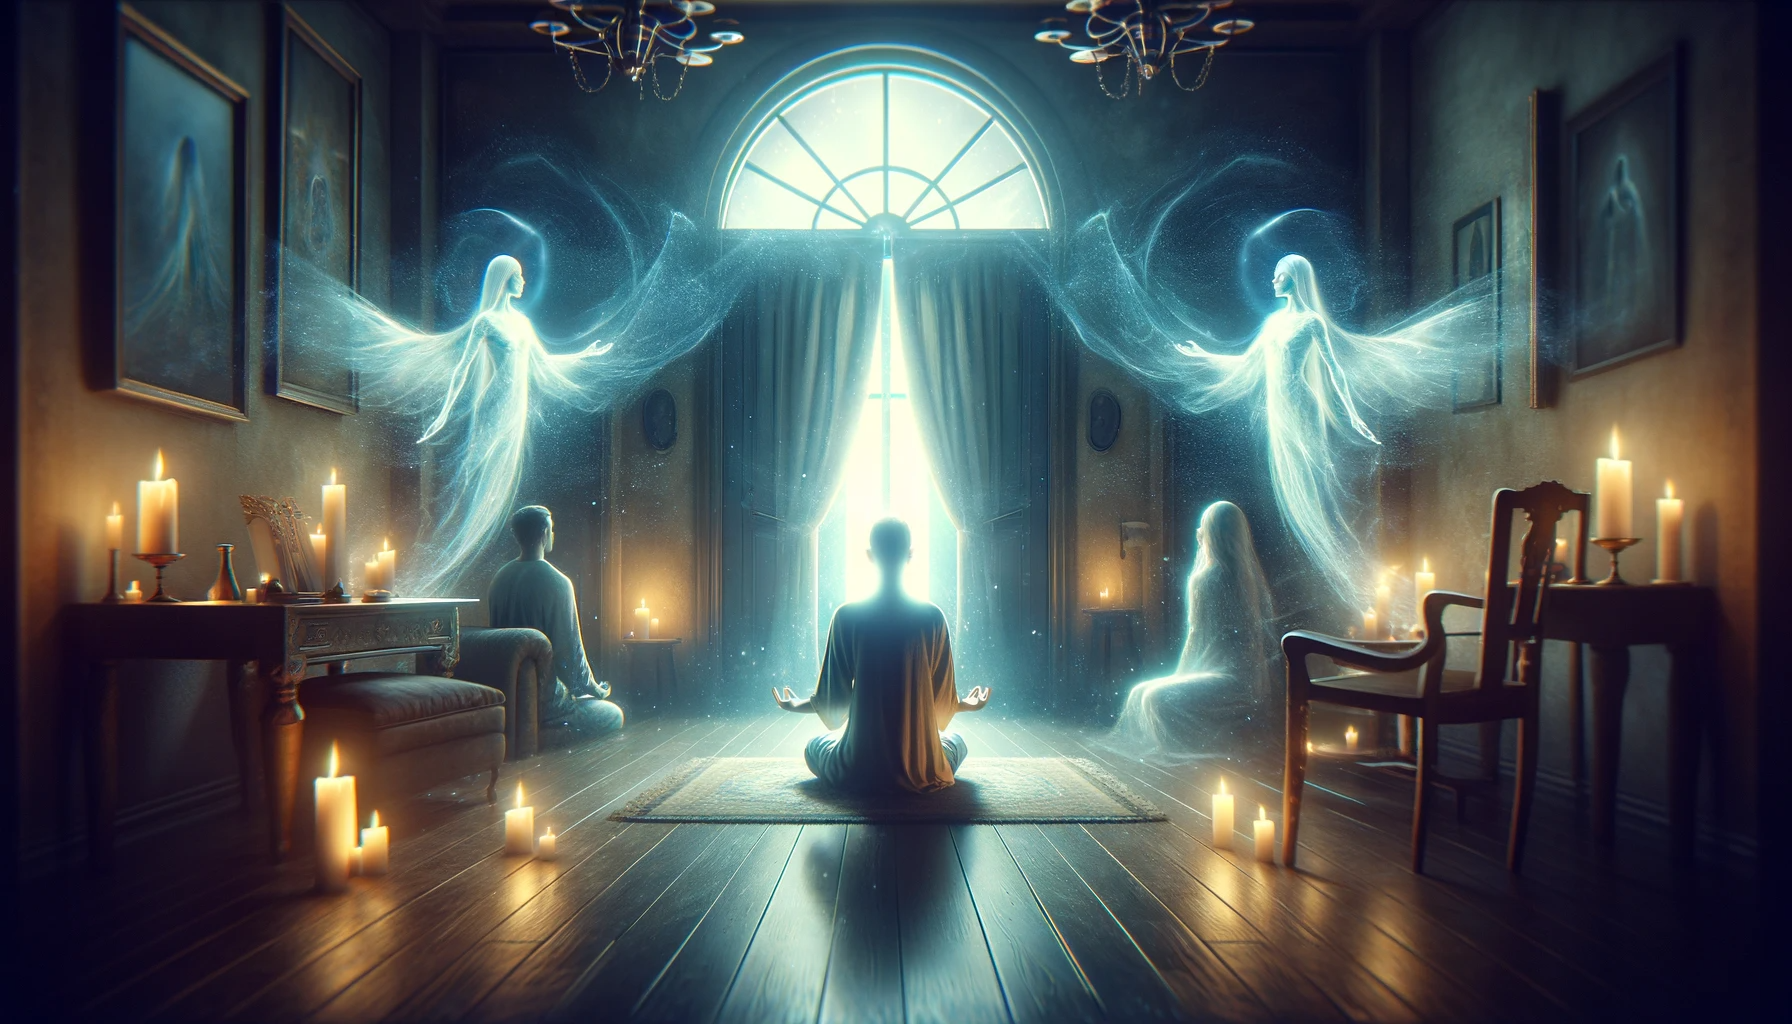 Médium em prece, cercado por luz etérea, representando a conexão espiritual e mediúnica na Doutrina Espírita.